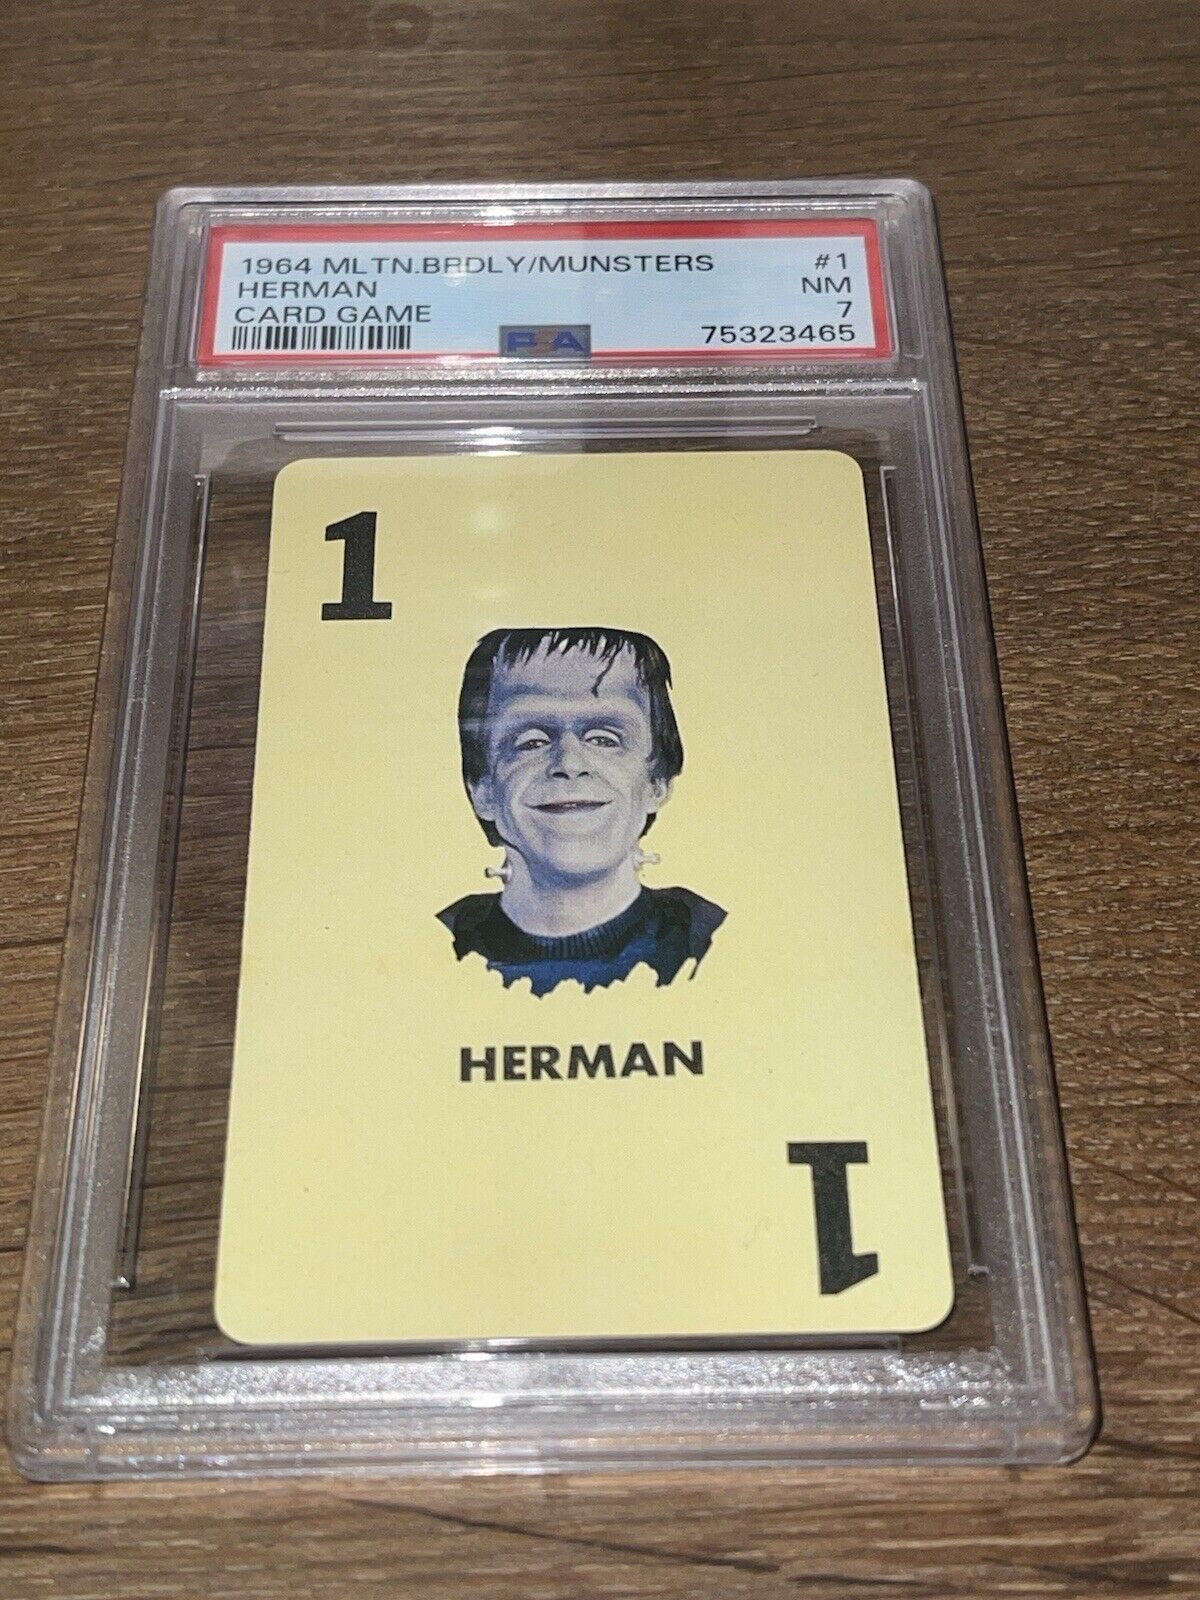 RARE VINTAGE 1964 MILTON BRADLEY MUNSTERS HERMAN CARD GAME ROOKIE PSA 7 N MINT